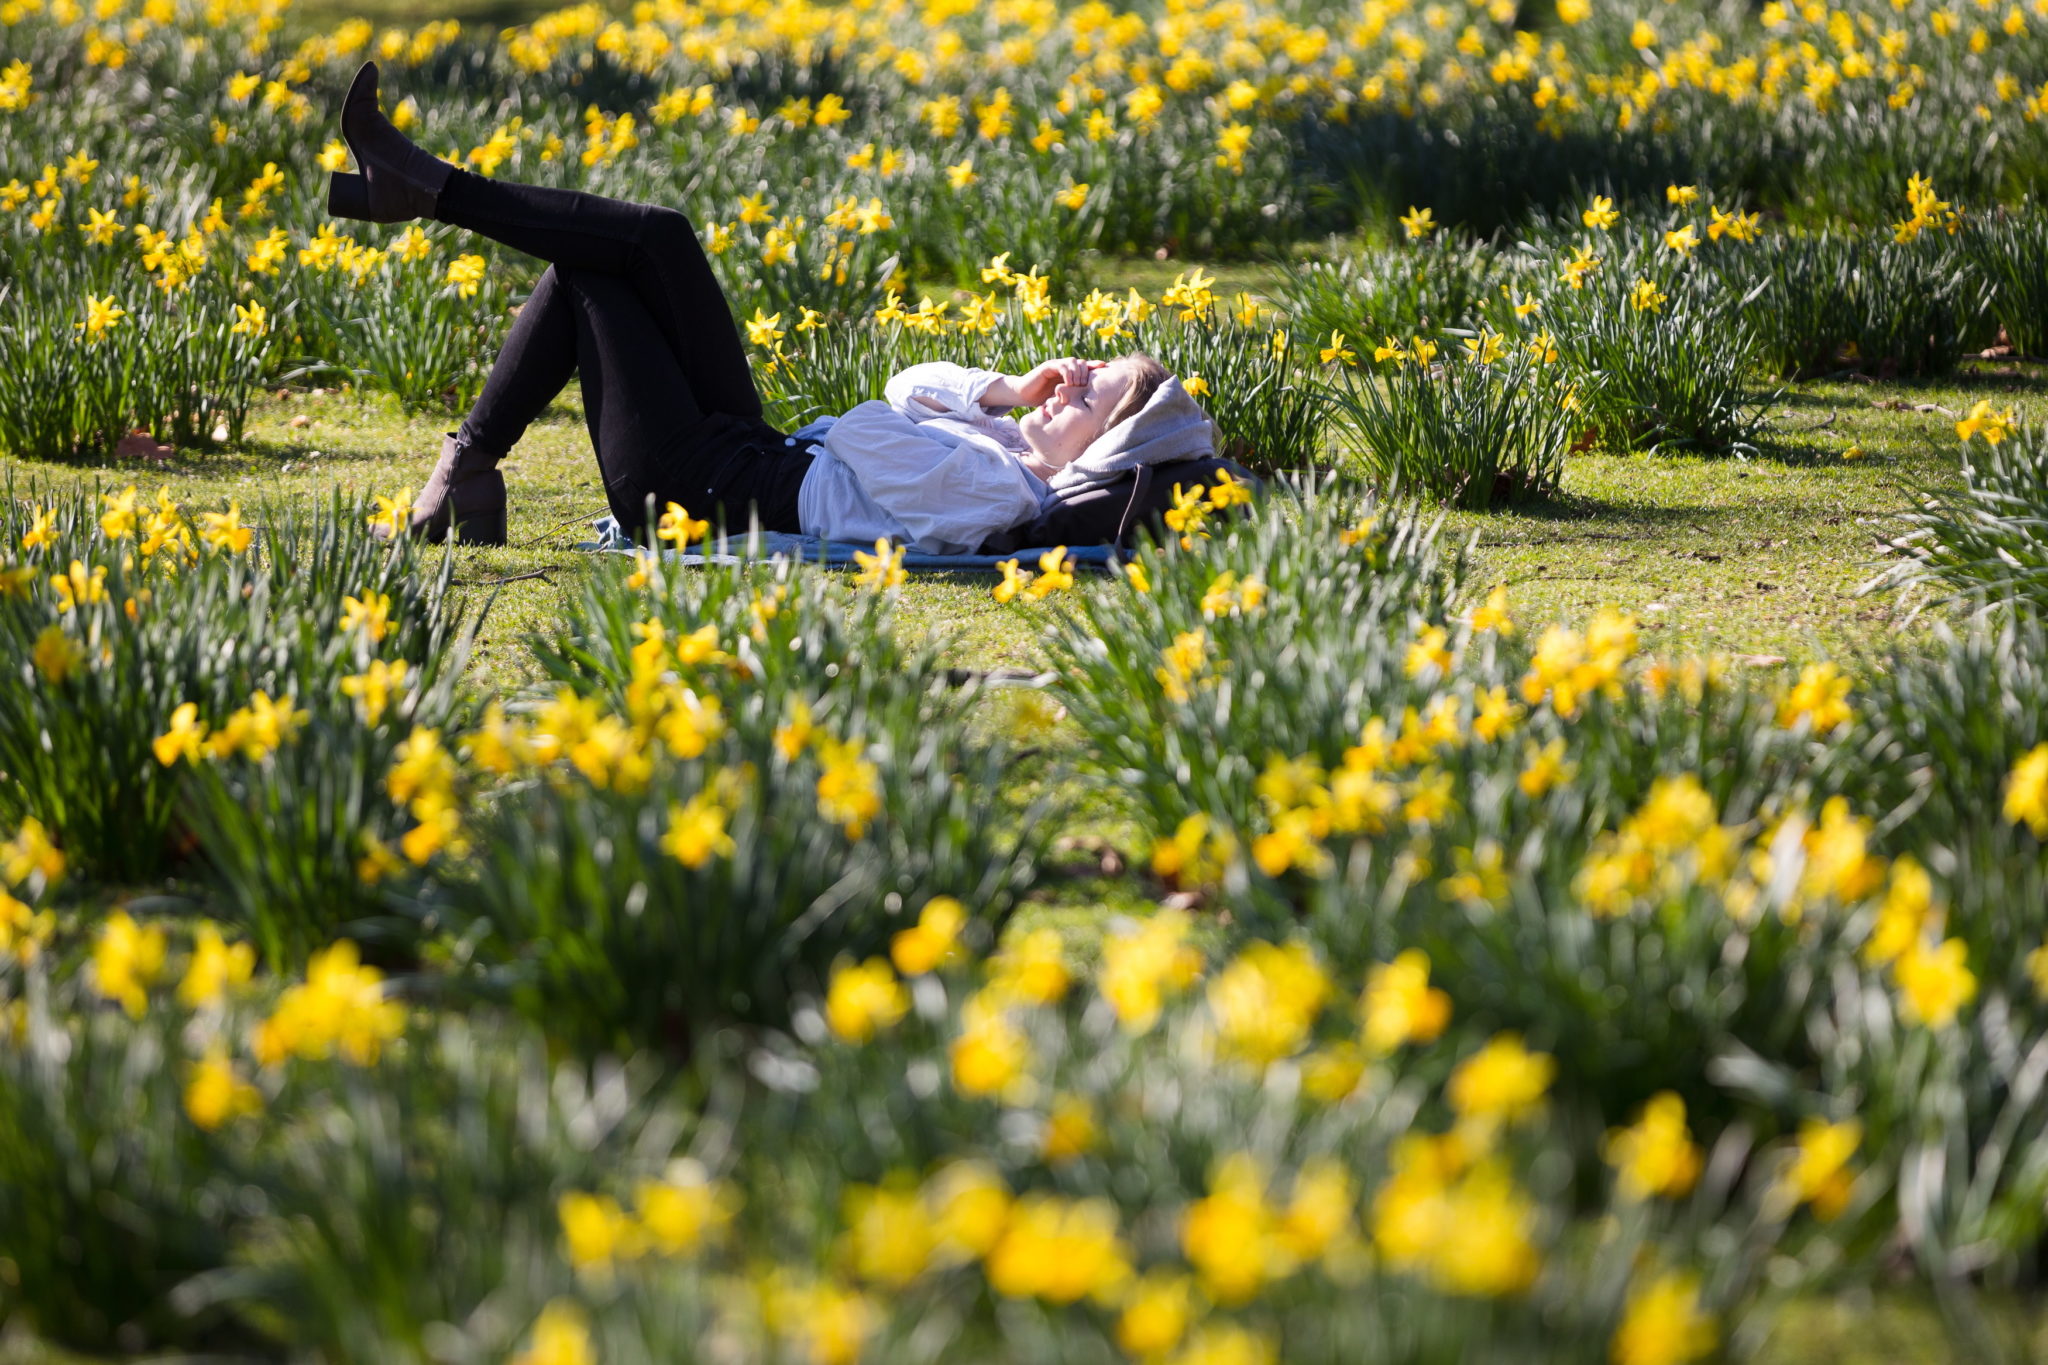 Wielka Brytania: słoneczny dzień w Londynie. Na zdjęciu park w centrum miasta - St James's Park. To najgorętszy dzień zimy w historii pomiarów temperatury. Słupki sięgnęły ponad 20 stopni Celsjusza, fot. VICKIE FLORES, PAP/EPA.